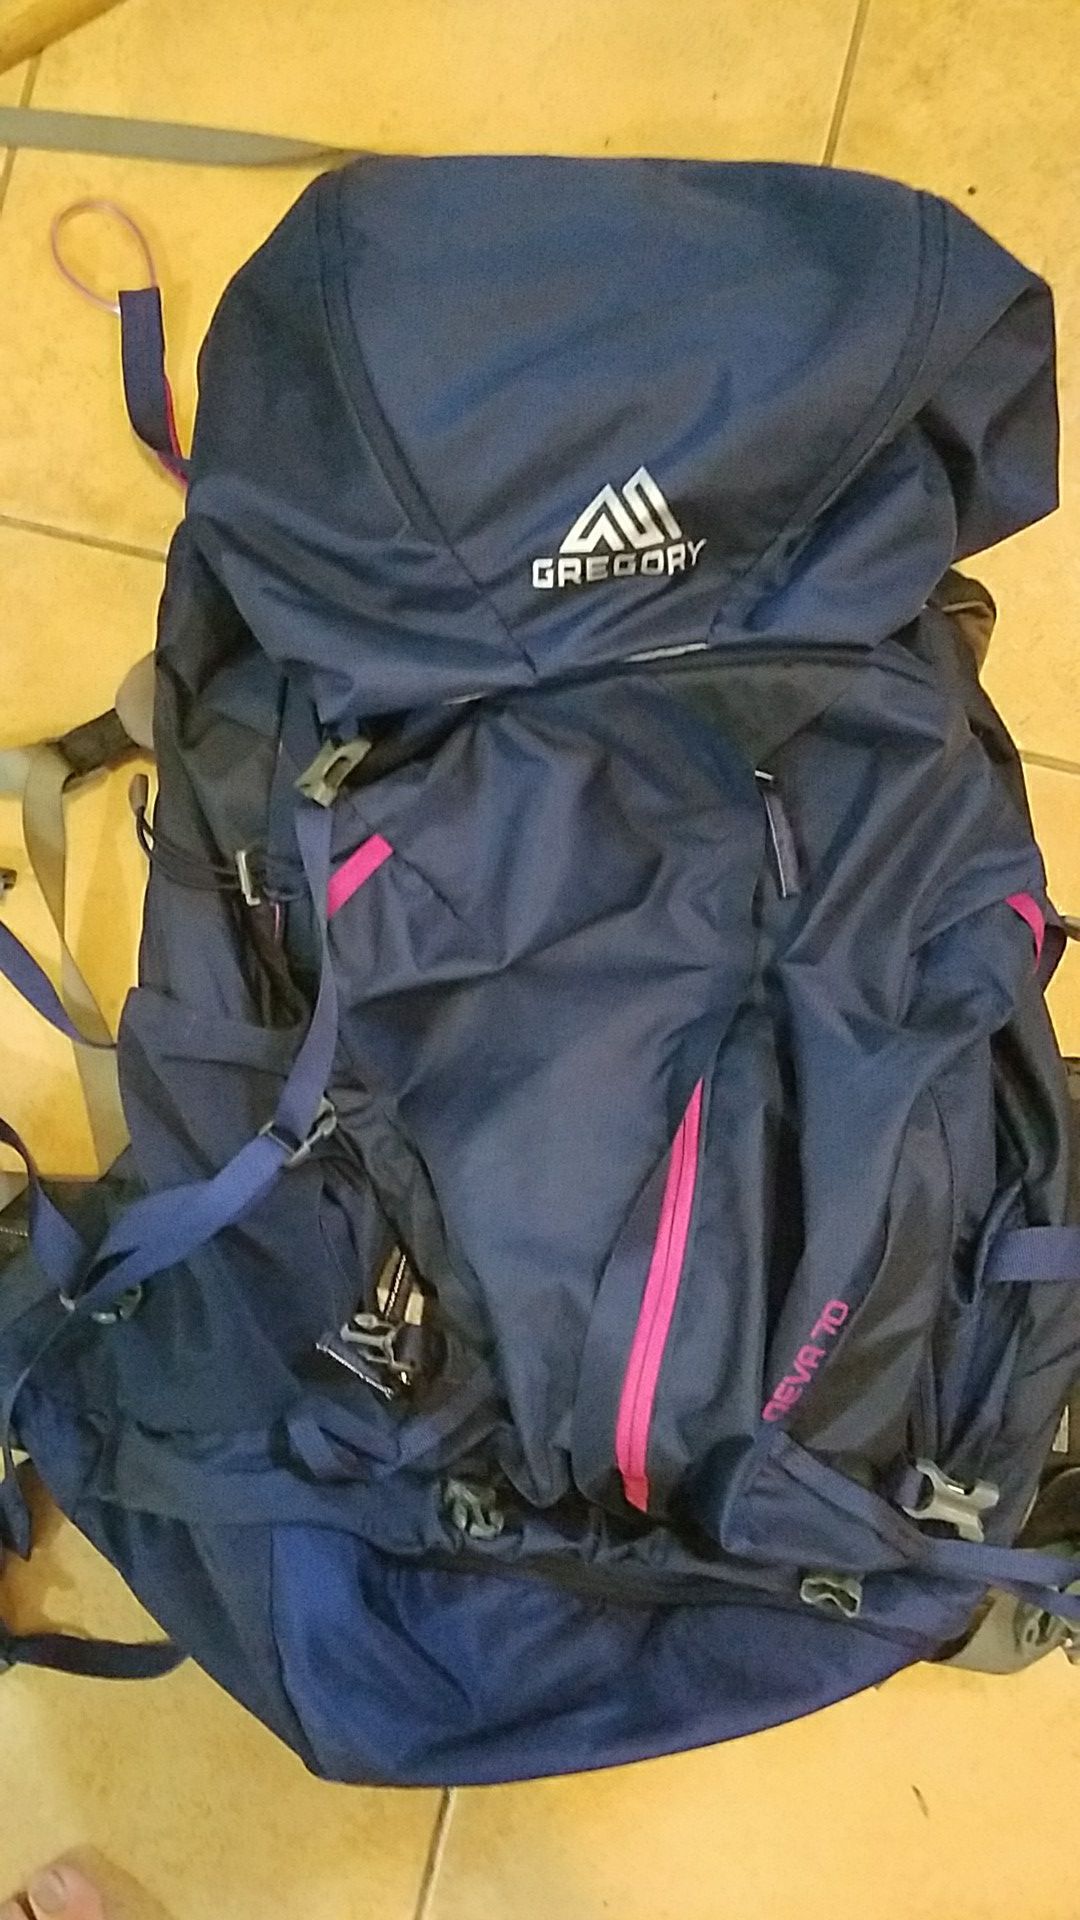 Gregory Deva 70 womens backpacking pack